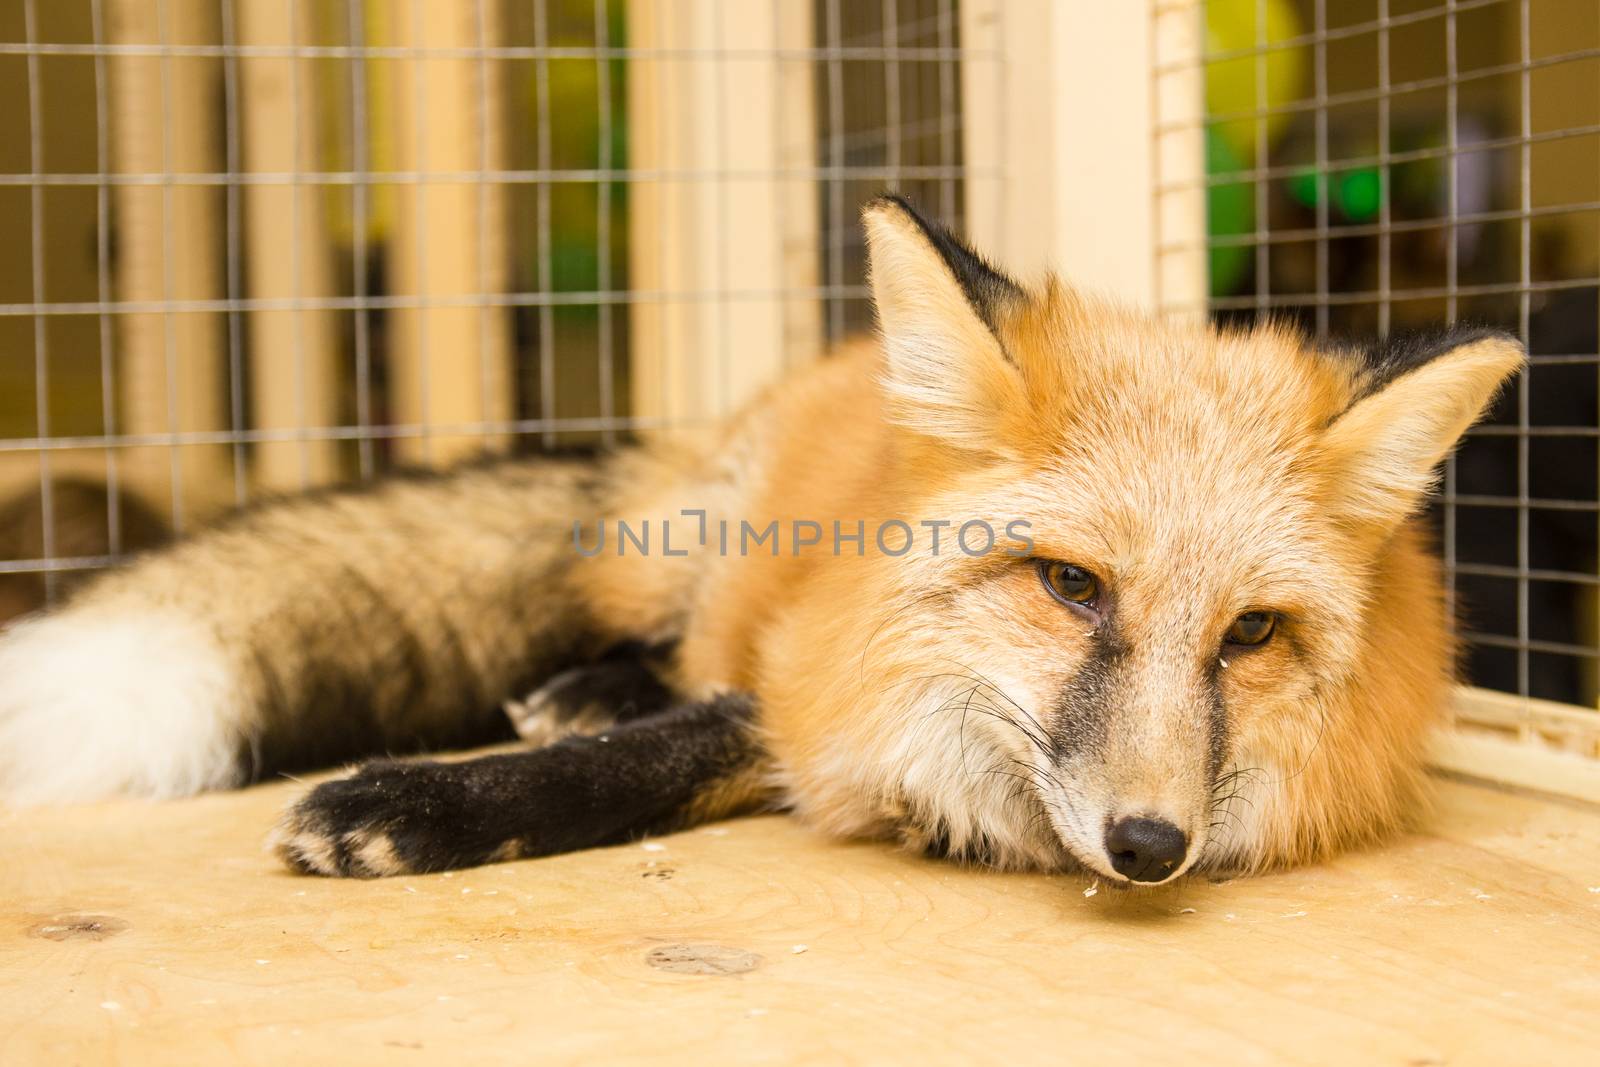 tired Fox in the petting zoo sleeping